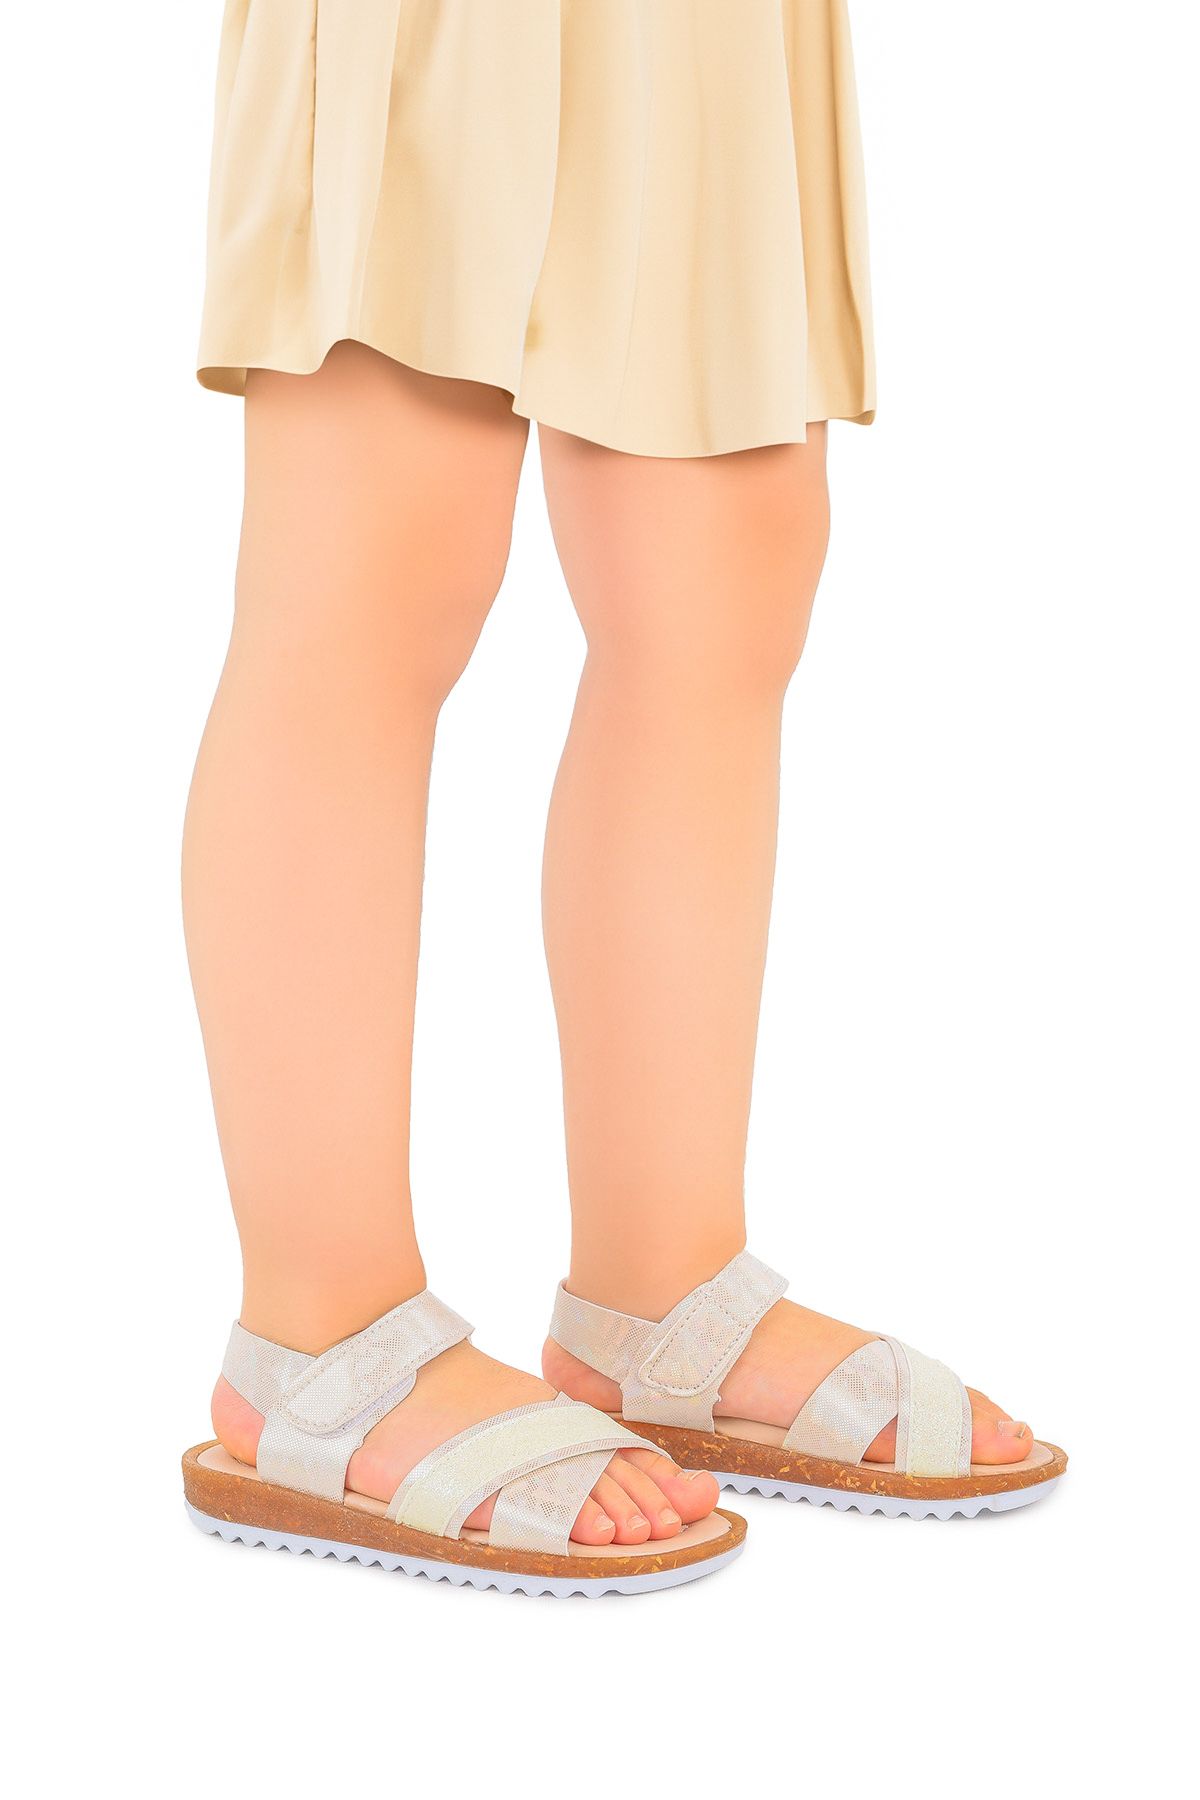 Kiko Kids Kız Çocuk Sandalet Arz 2349